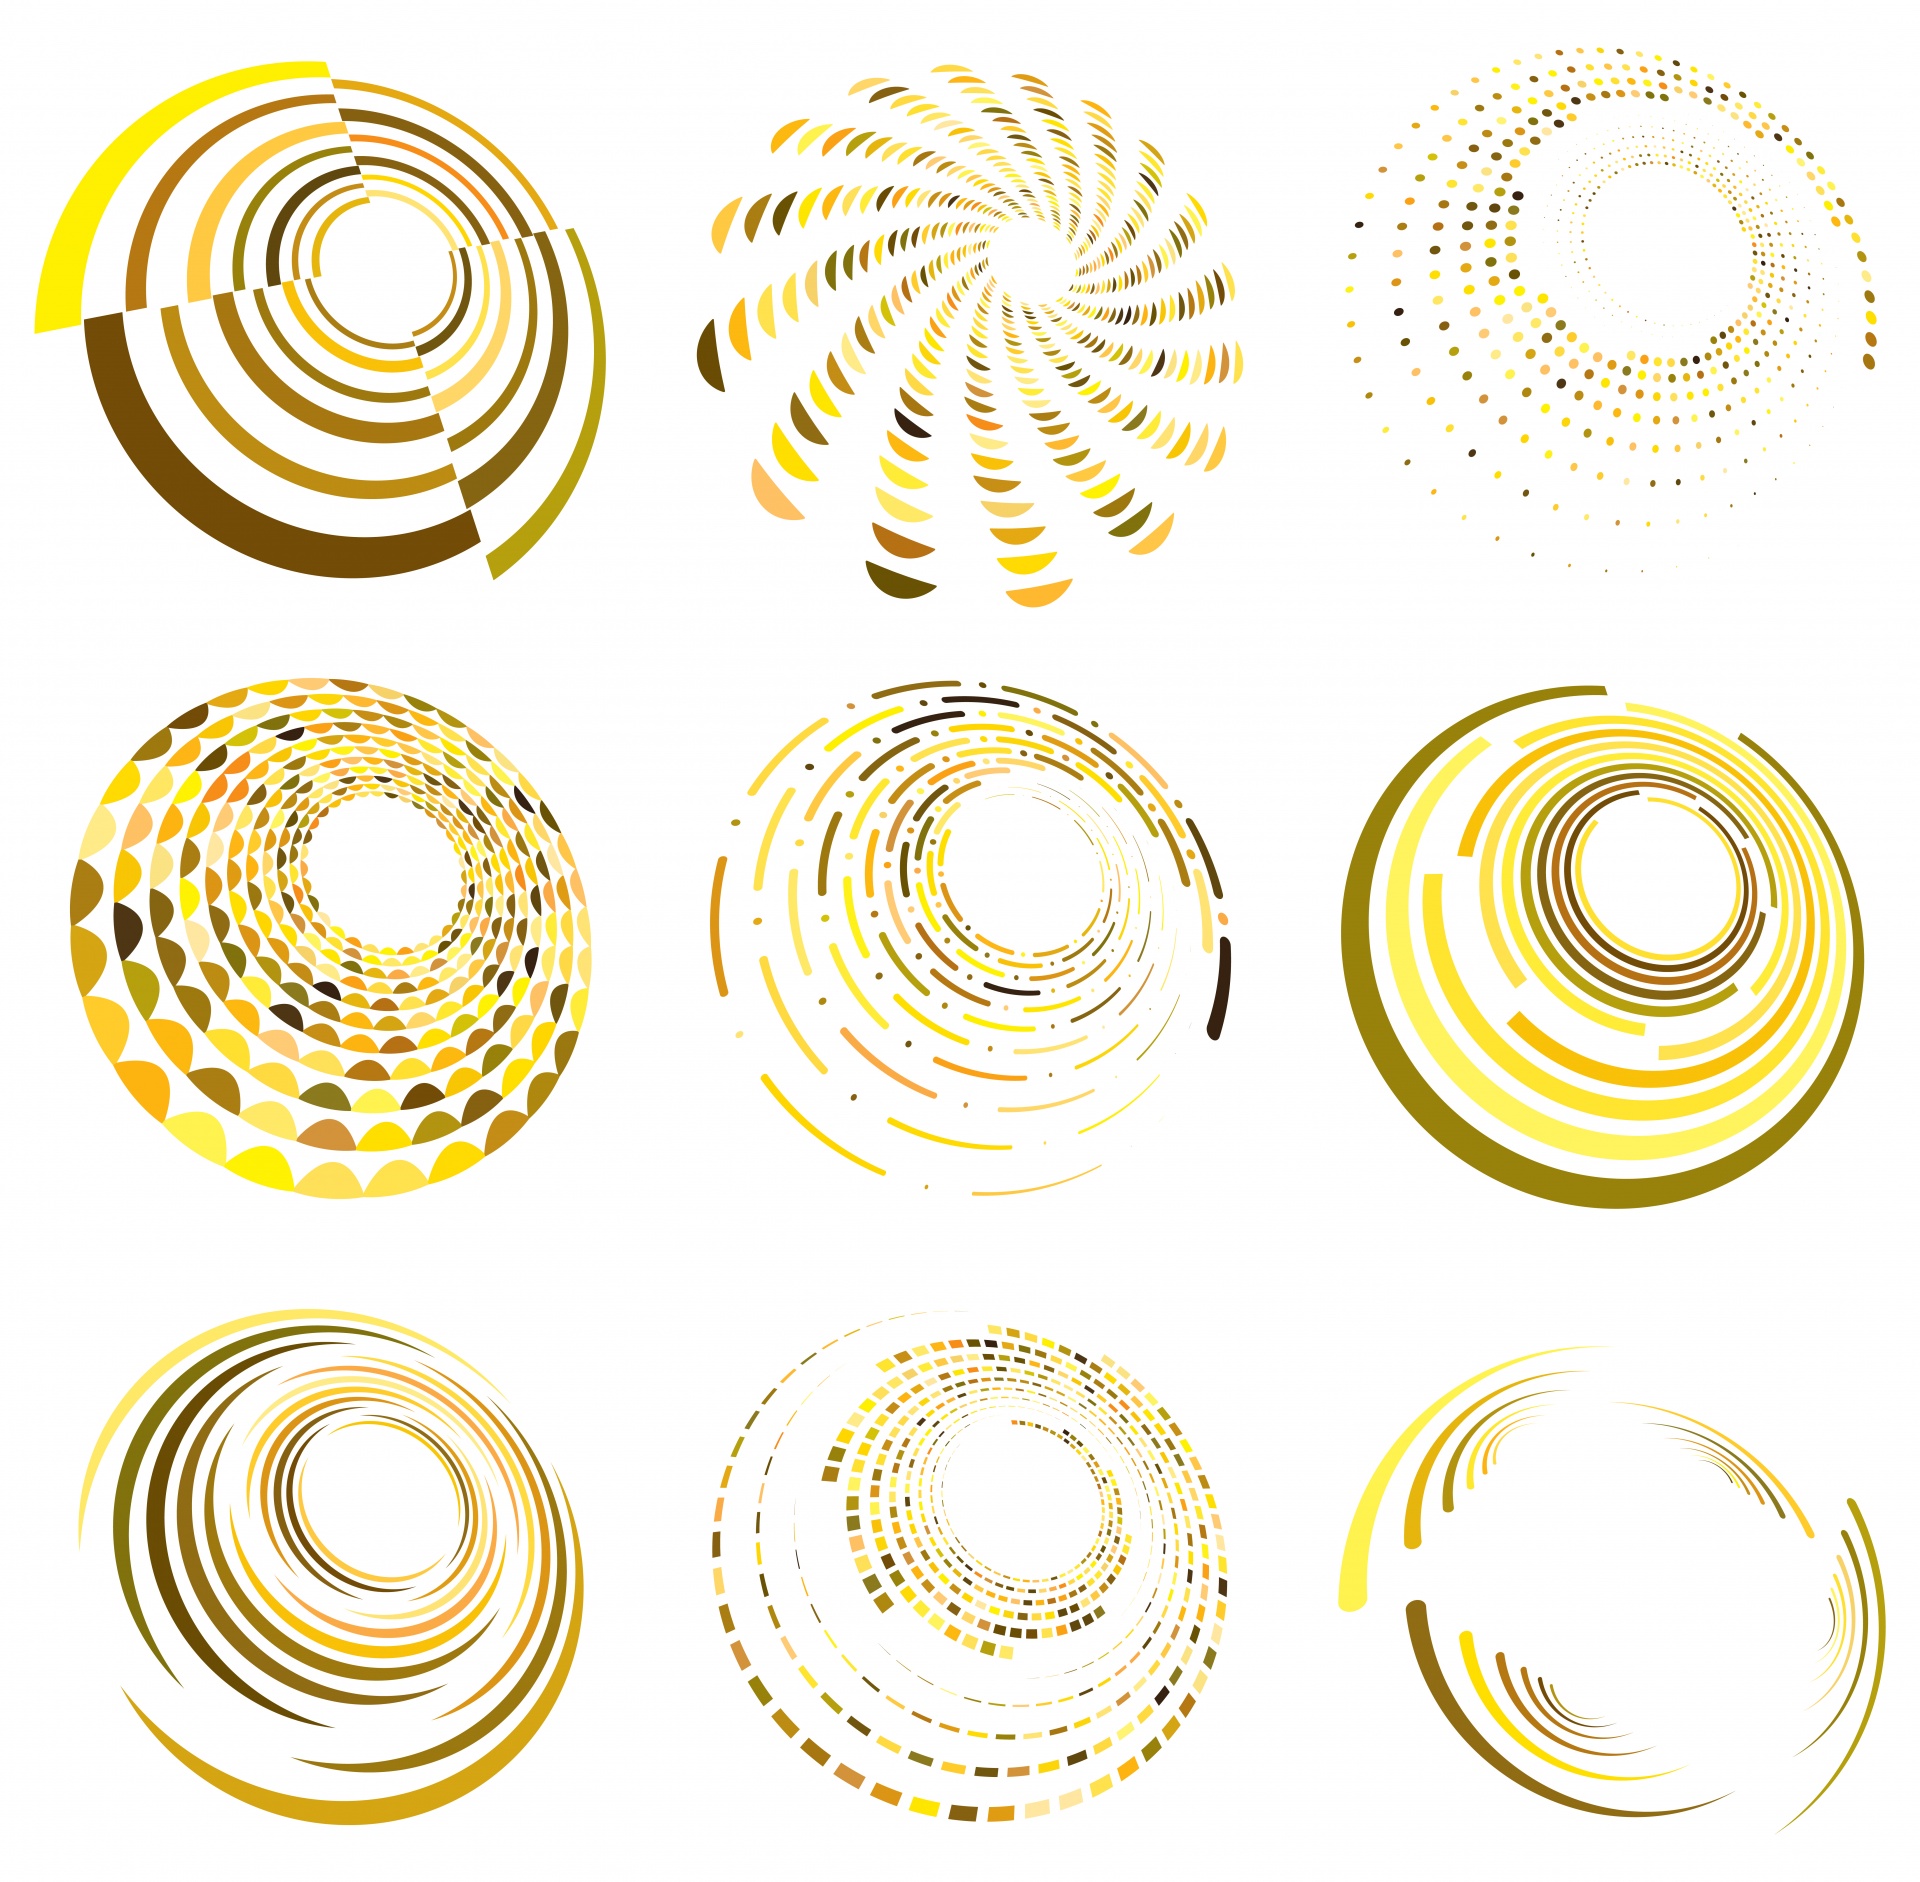 Spiral, Vortex, Swirl Shape Set